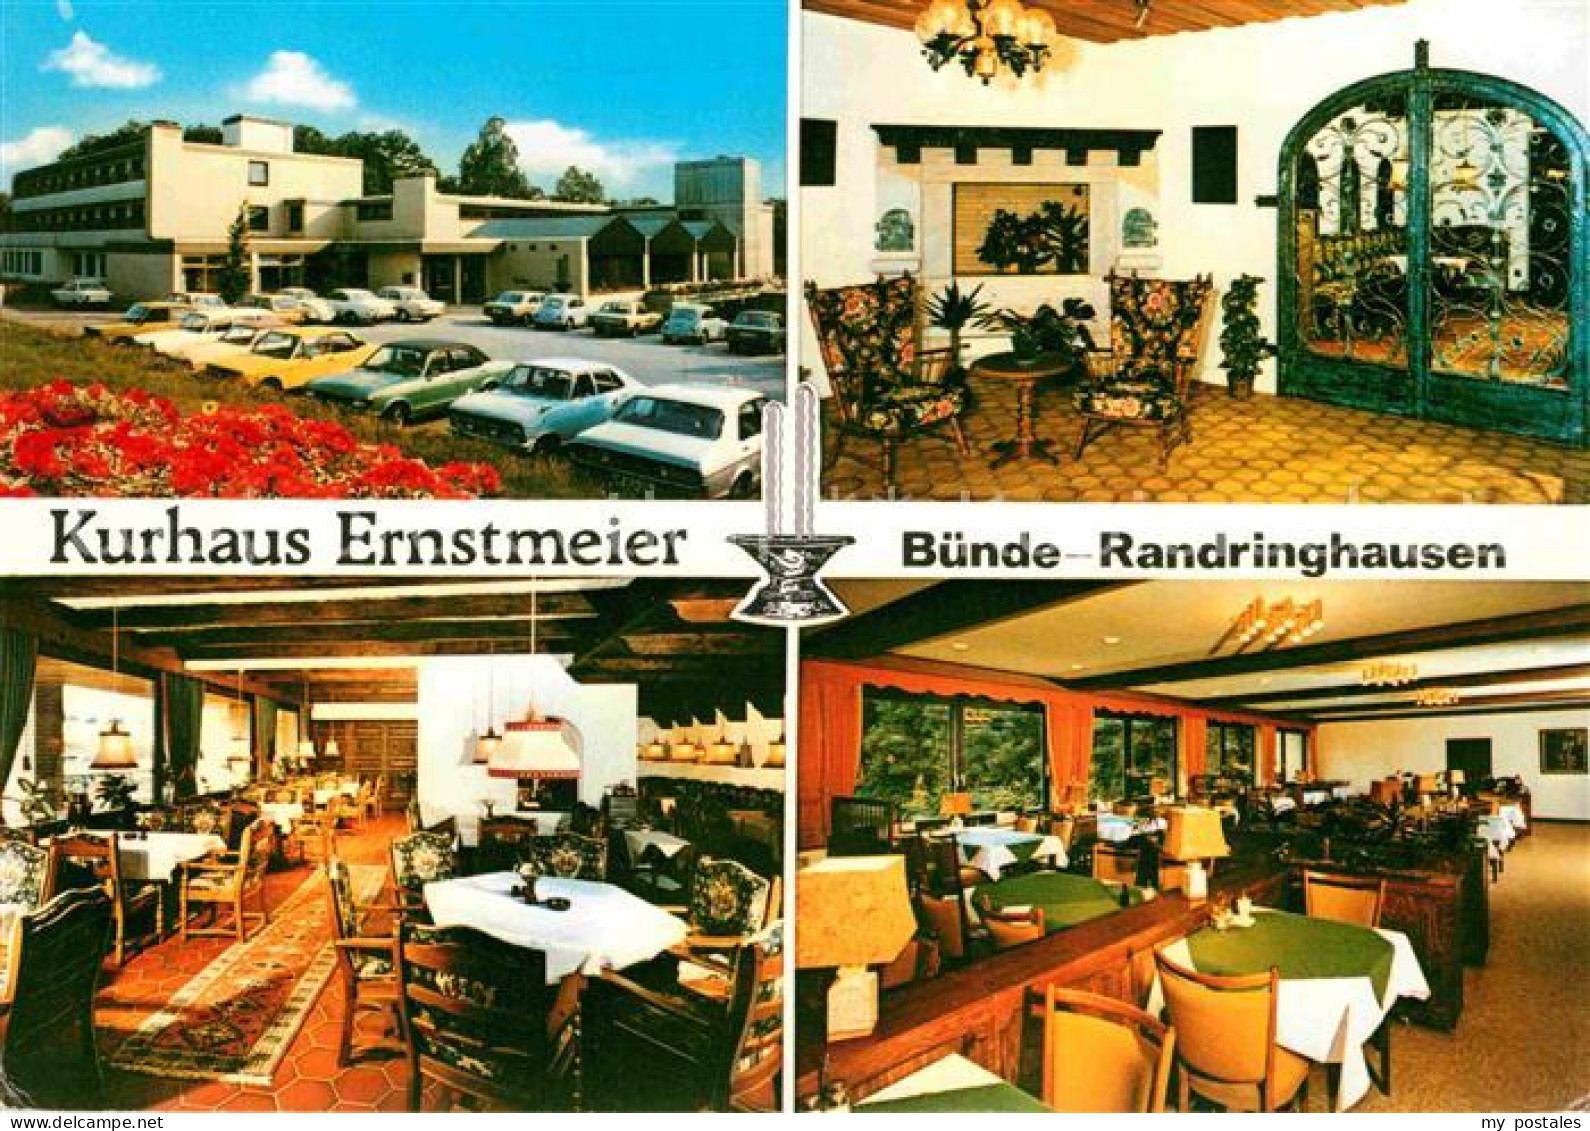 72815278 Randringhausen Bad Kurhaus Ernstmeier  Randringhausen Bad - Buende